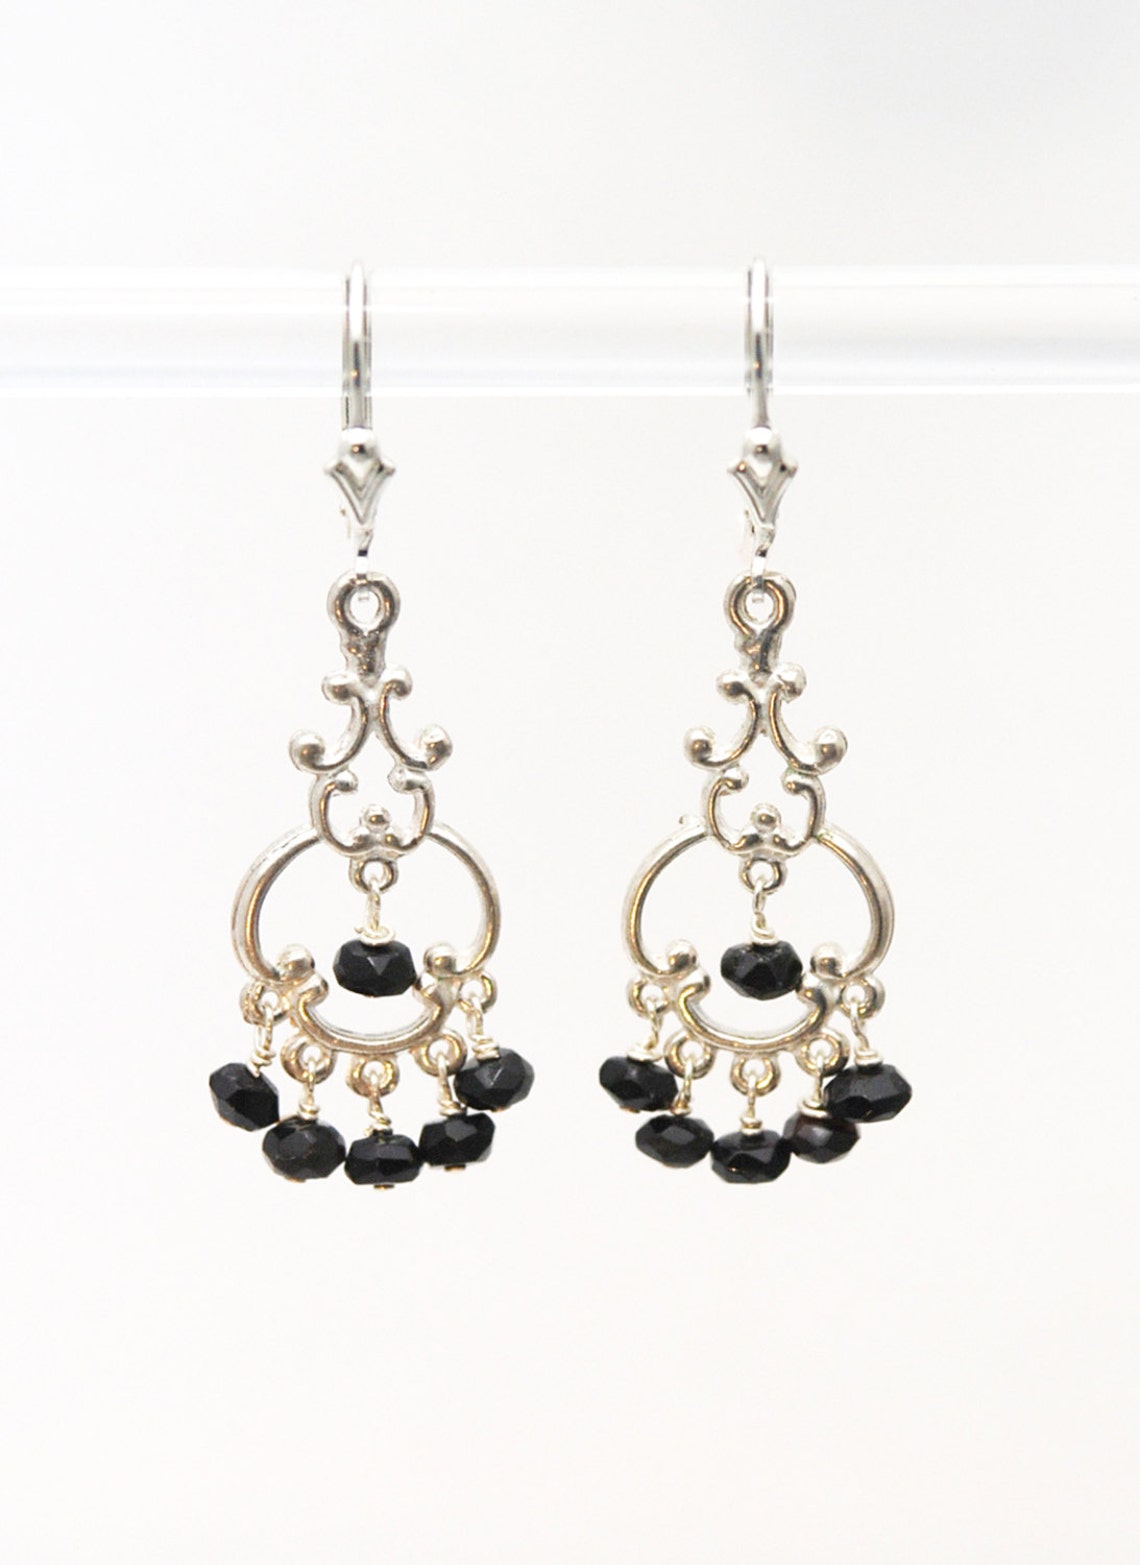 Black Onyx Chandelier earrings / Black and Silver earrings / | Etsy